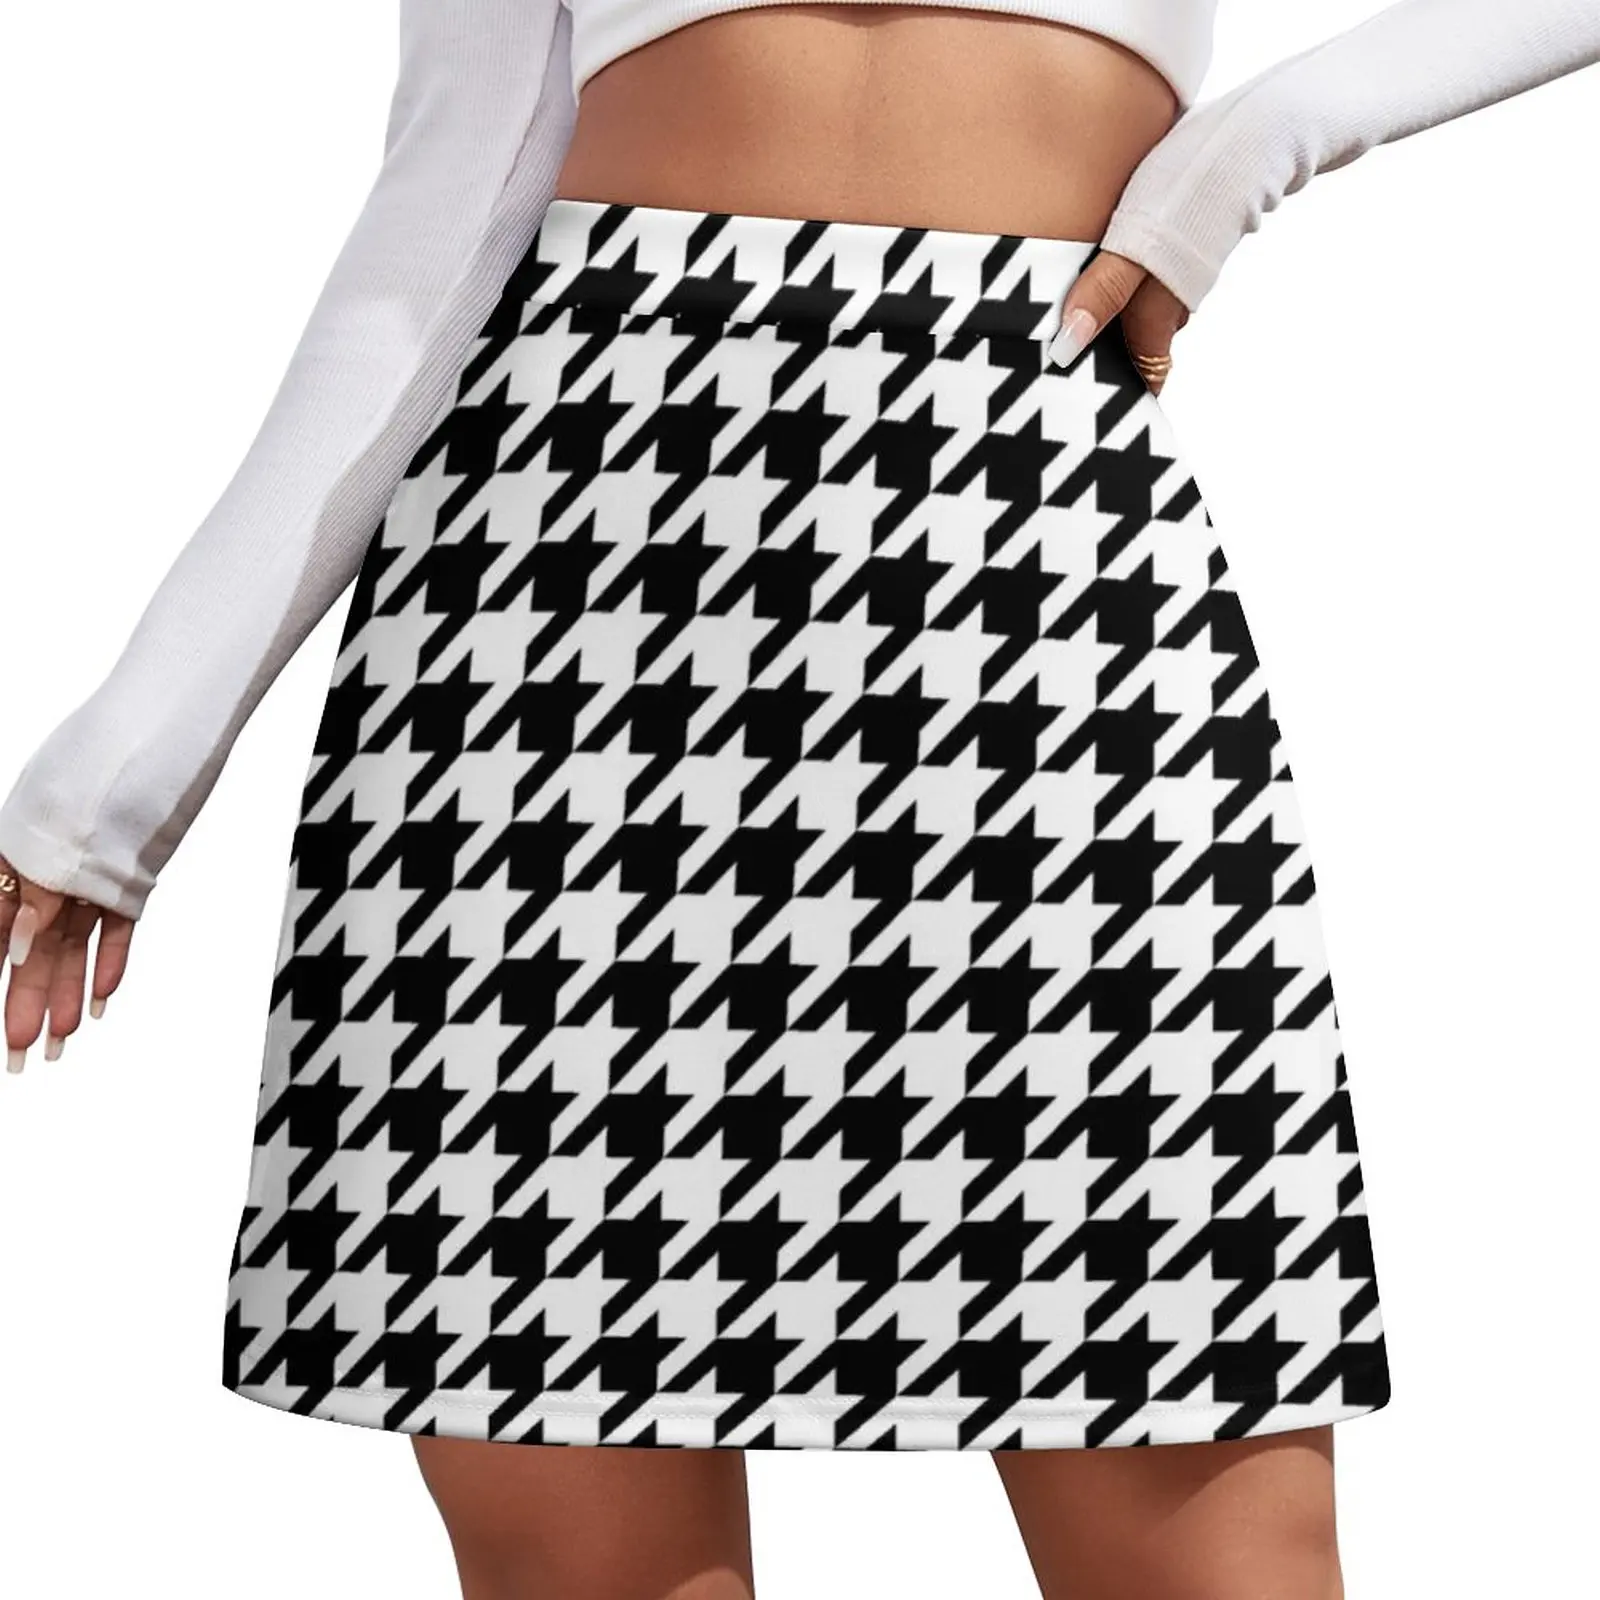 

Твидовая юбка с абстрактным геометрическим рисунком, чёрная поломанная клетчатая мини-юбка для лета, Женская юбка, Корейская одежда для женщин